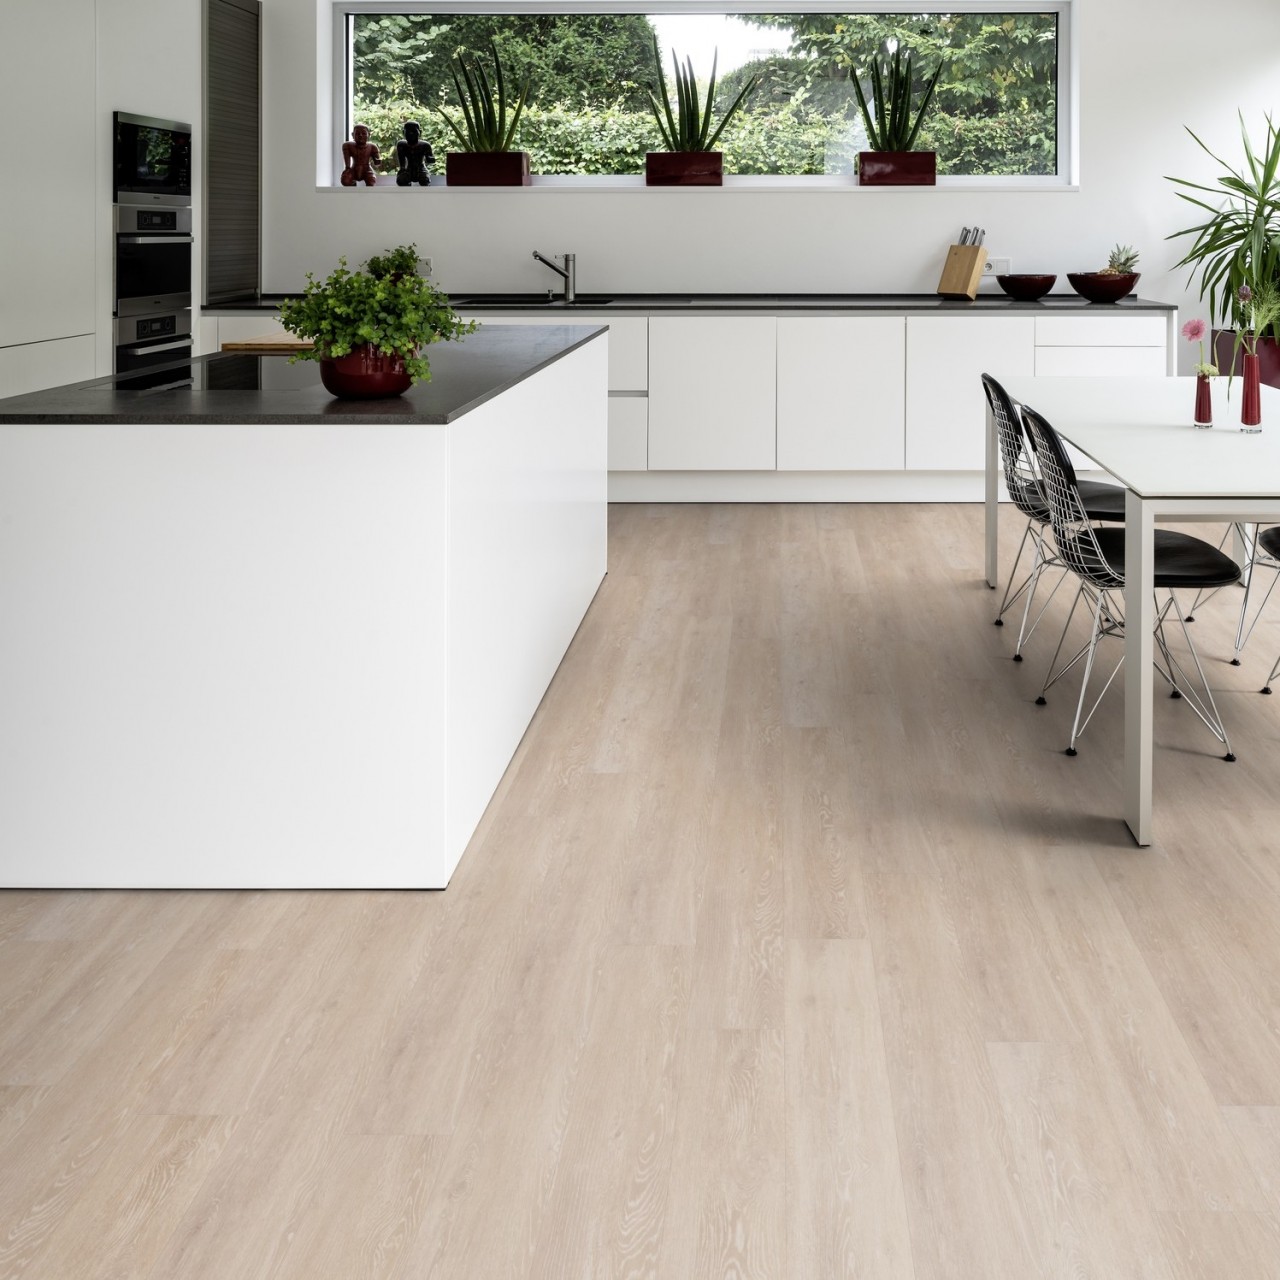 TER HÜRNE Design-Vinylboden Eiche Viborg beige Landhausdiele F02 | Pure Choice Comfort | 34 m²